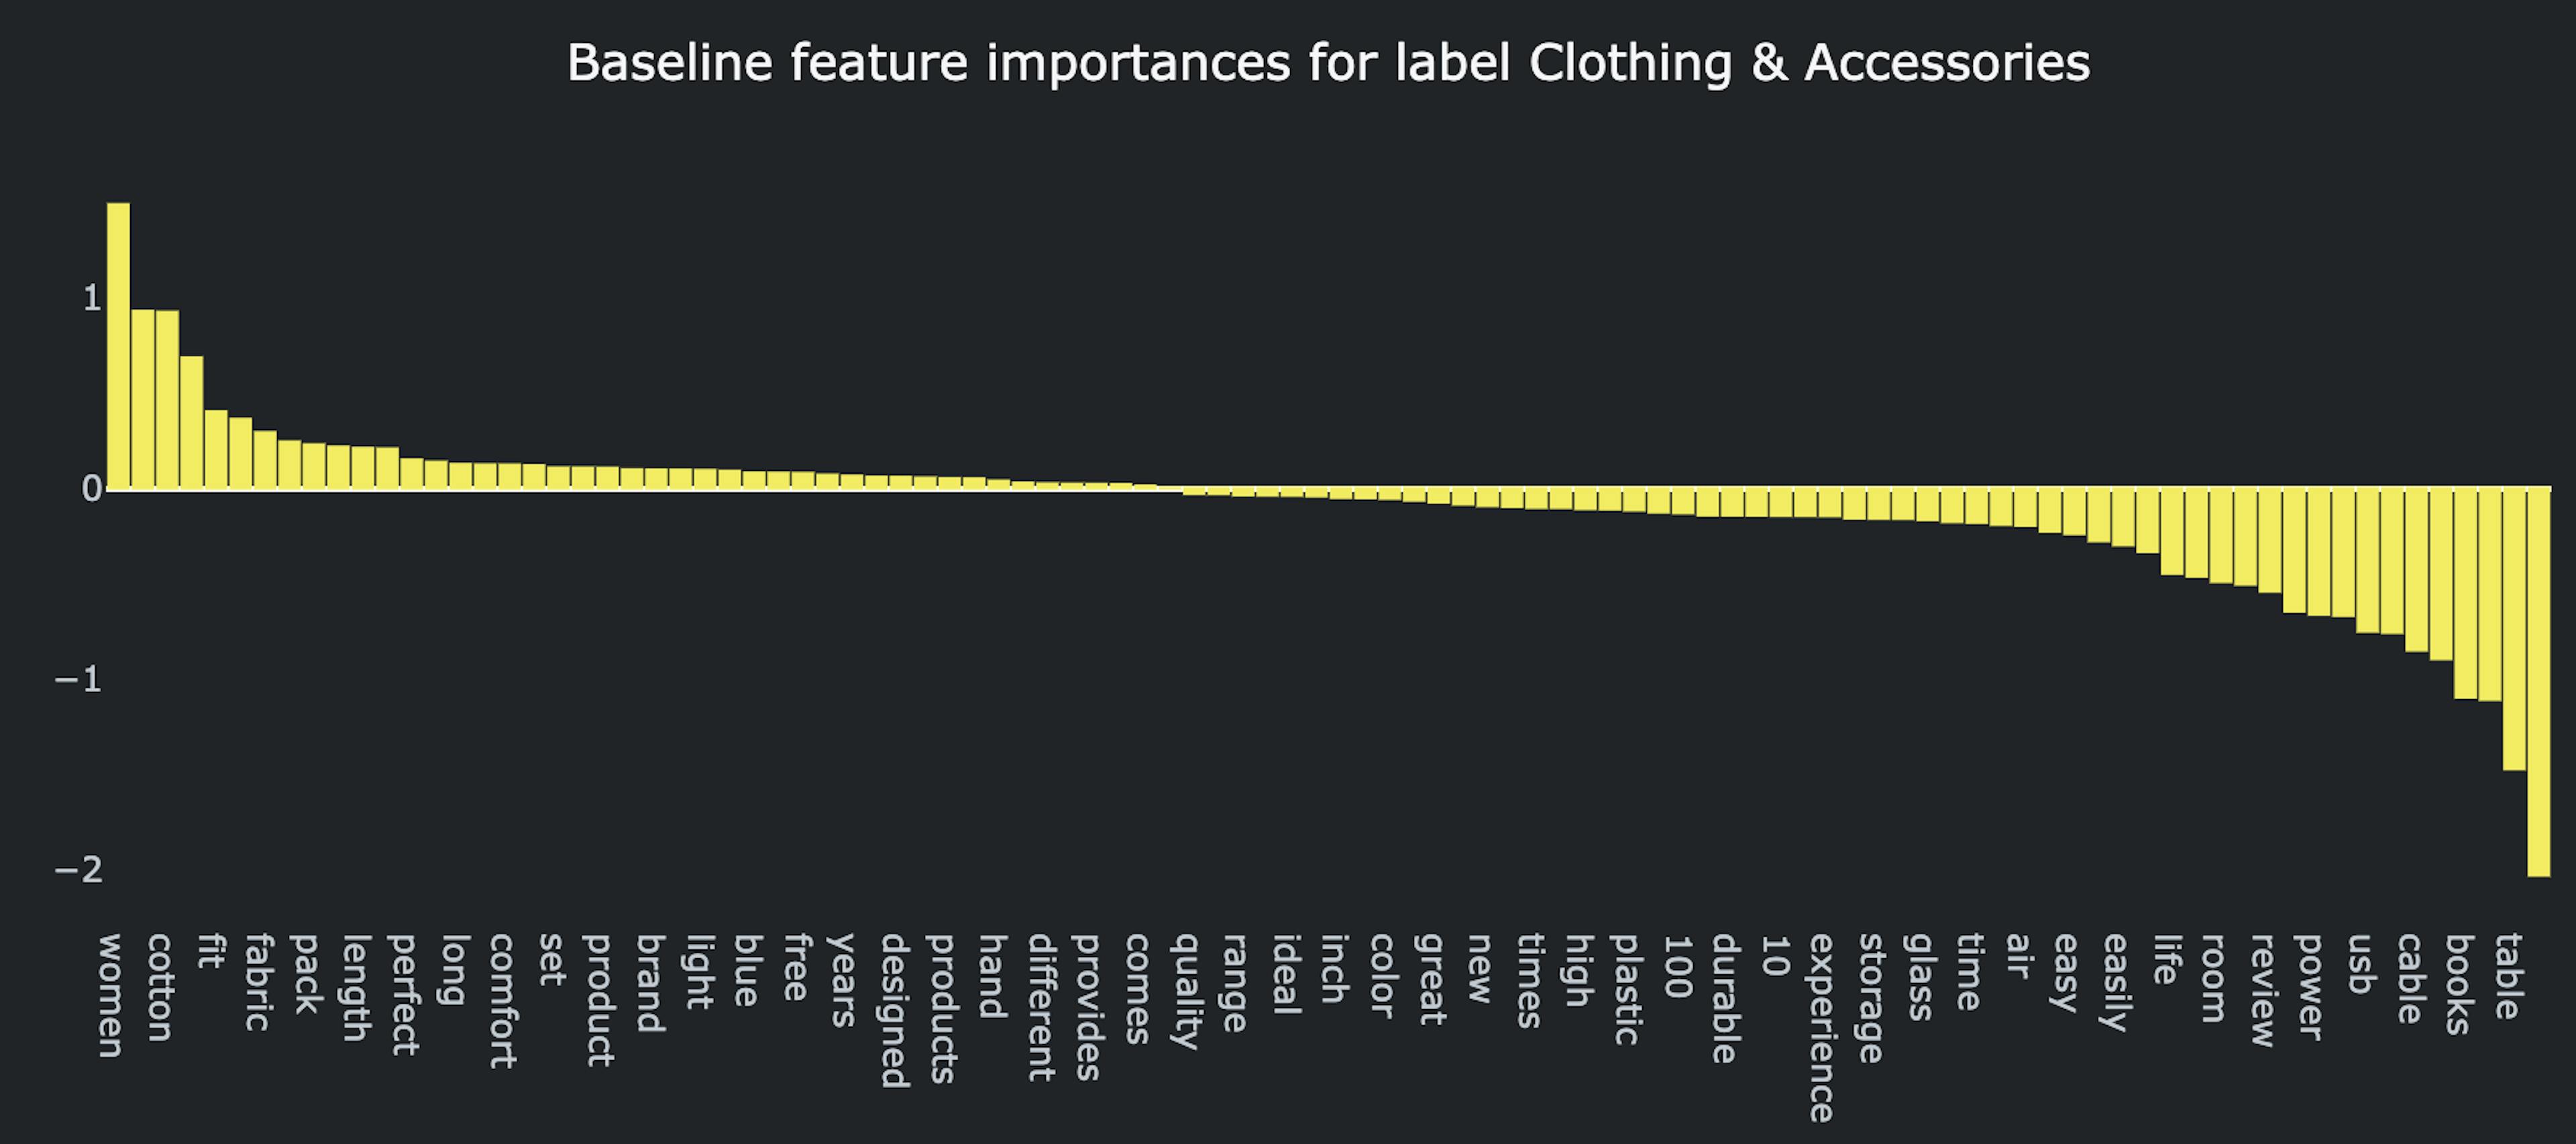 “服装和配饰”标签基线解决方案的特征重要性